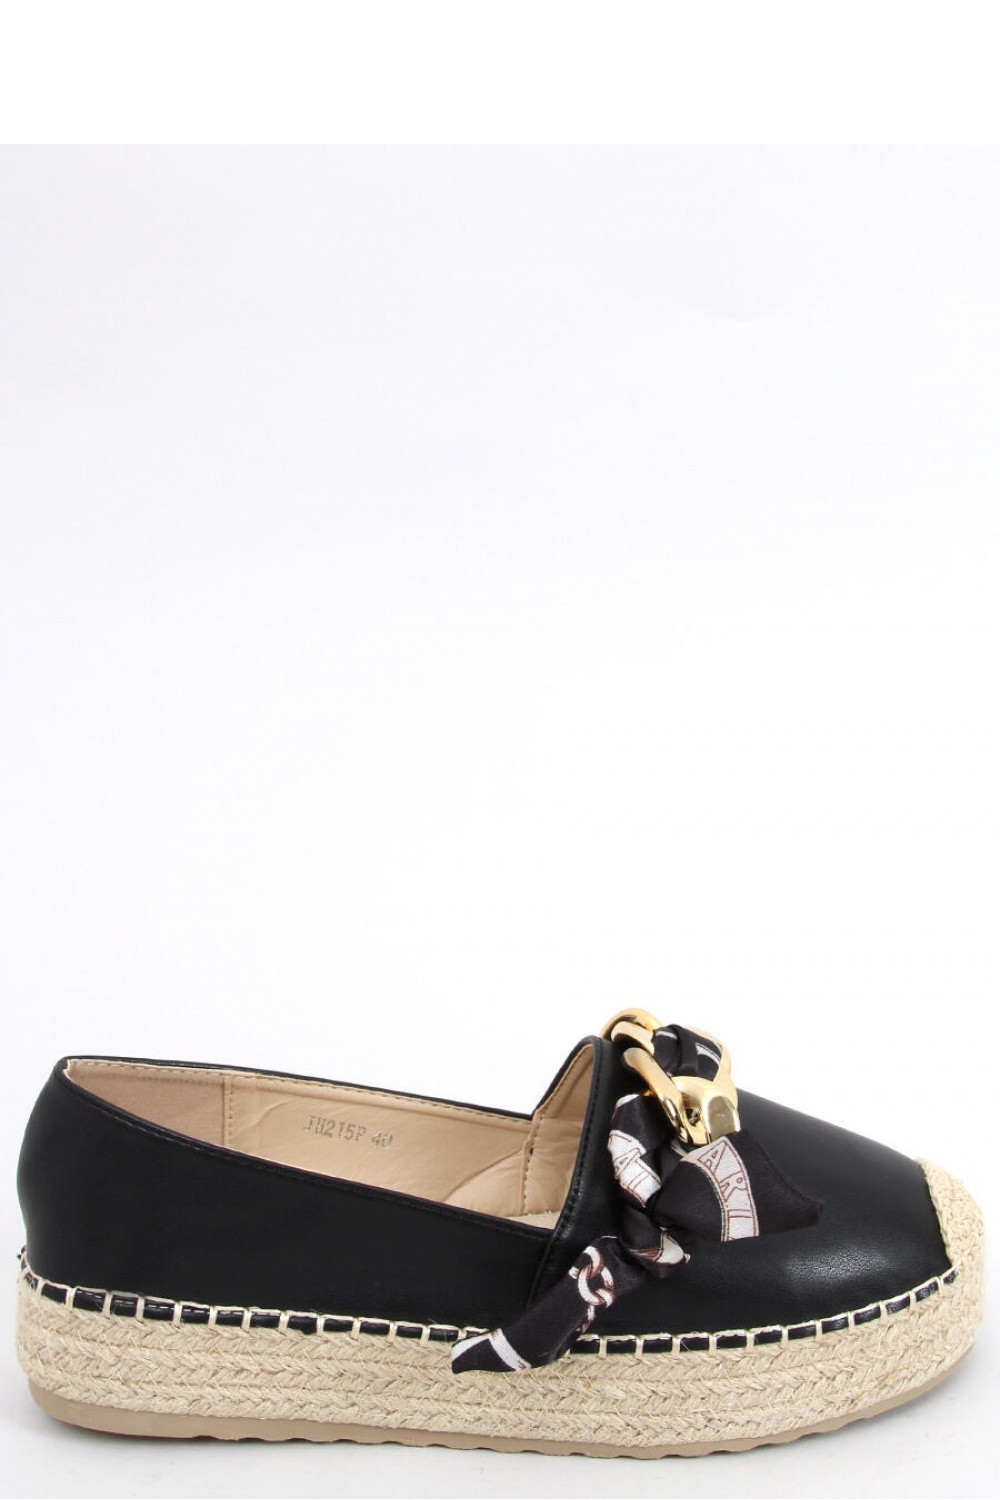 Dámské boty Espadrilky model 17351851 - Inello Velikost: 39, Barvy: černá se zlatou